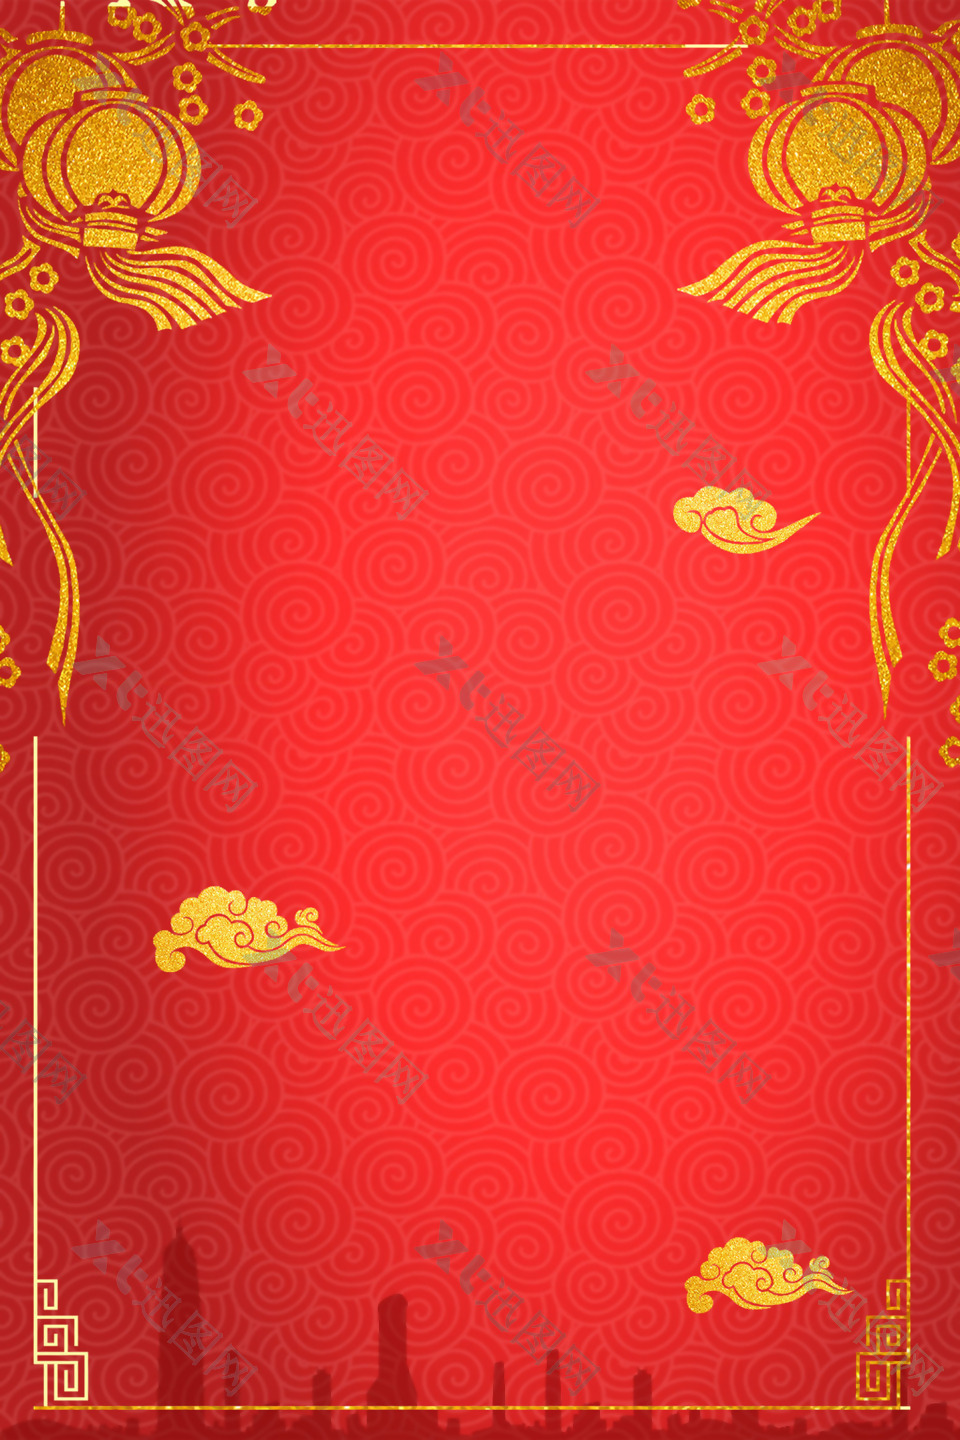 中国风新年海报背景设计